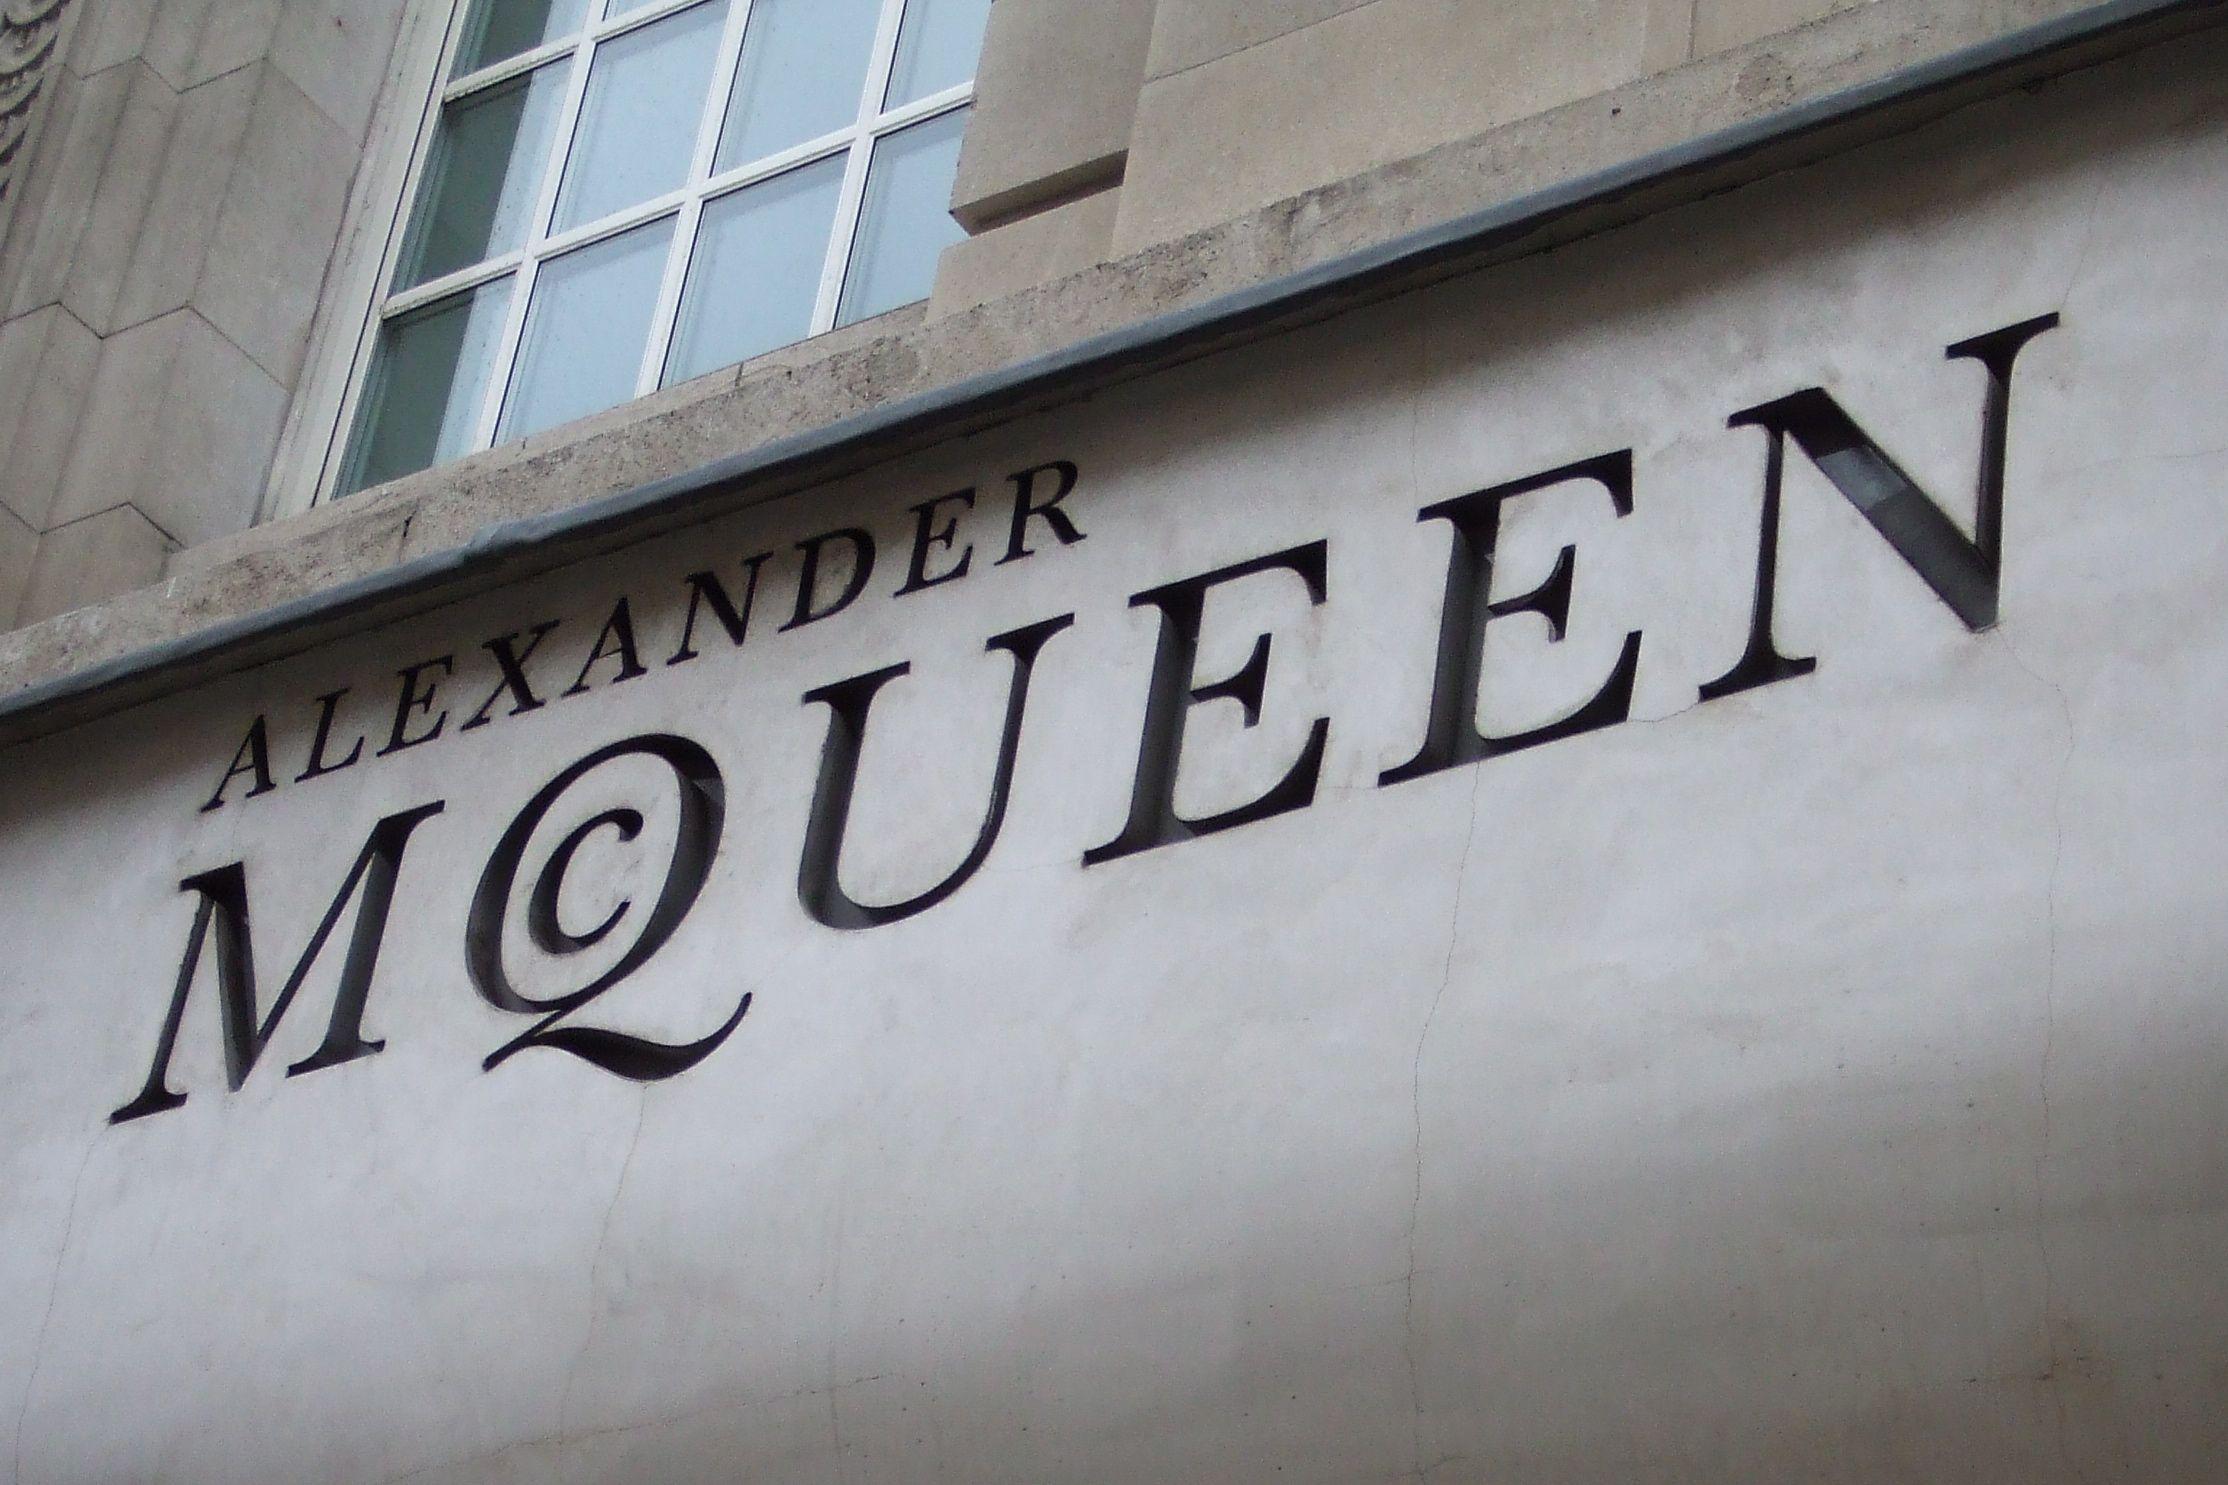 Alexander McQueen Logo - File:Alexander McQueen front.jpg - Wikimedia Commons